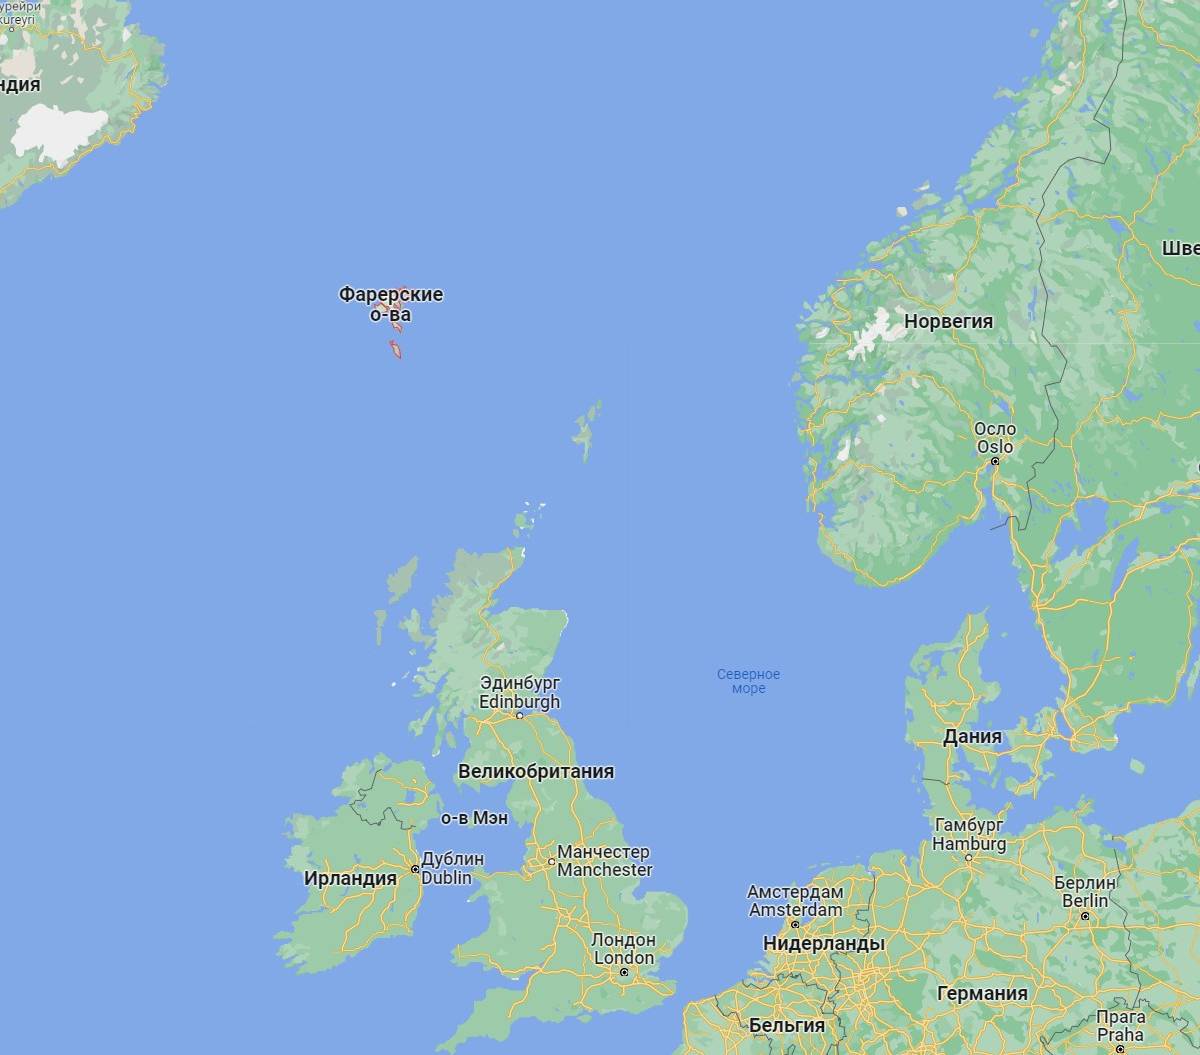 Фарерские острова отказались разрывать деловые отношения с Россией вопреки Лондону